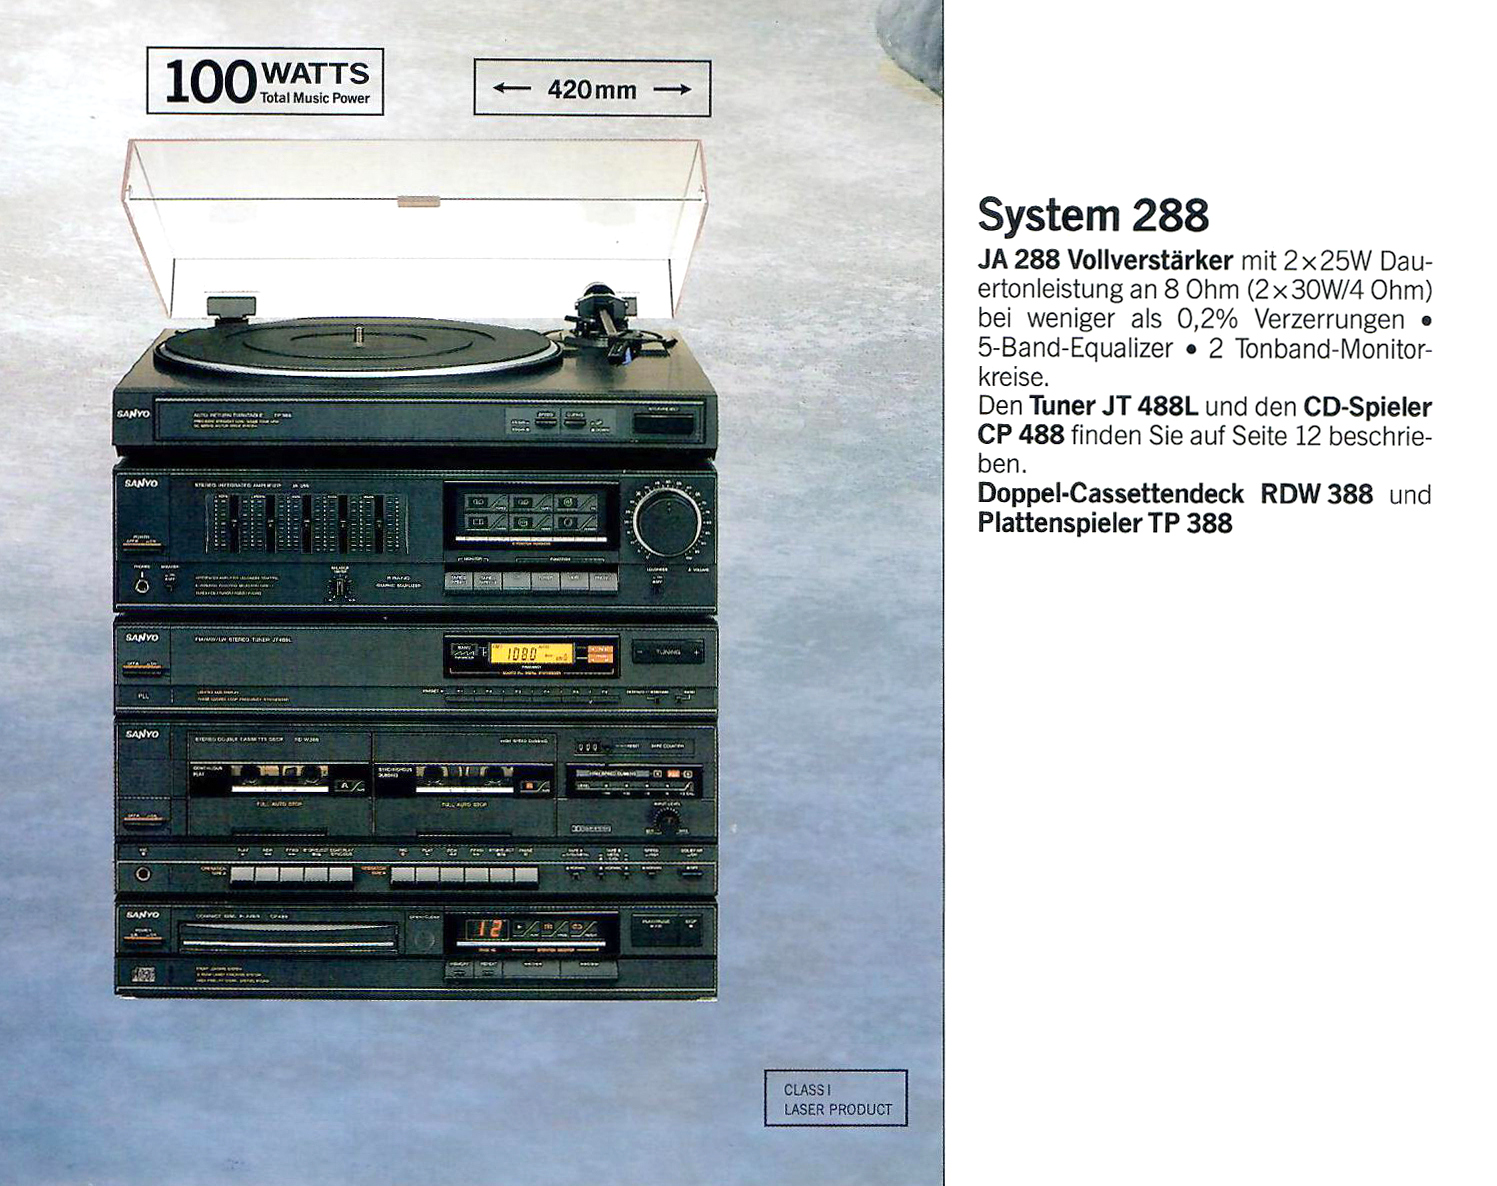 Sanyo System 288-Prospekt-1989.jpg